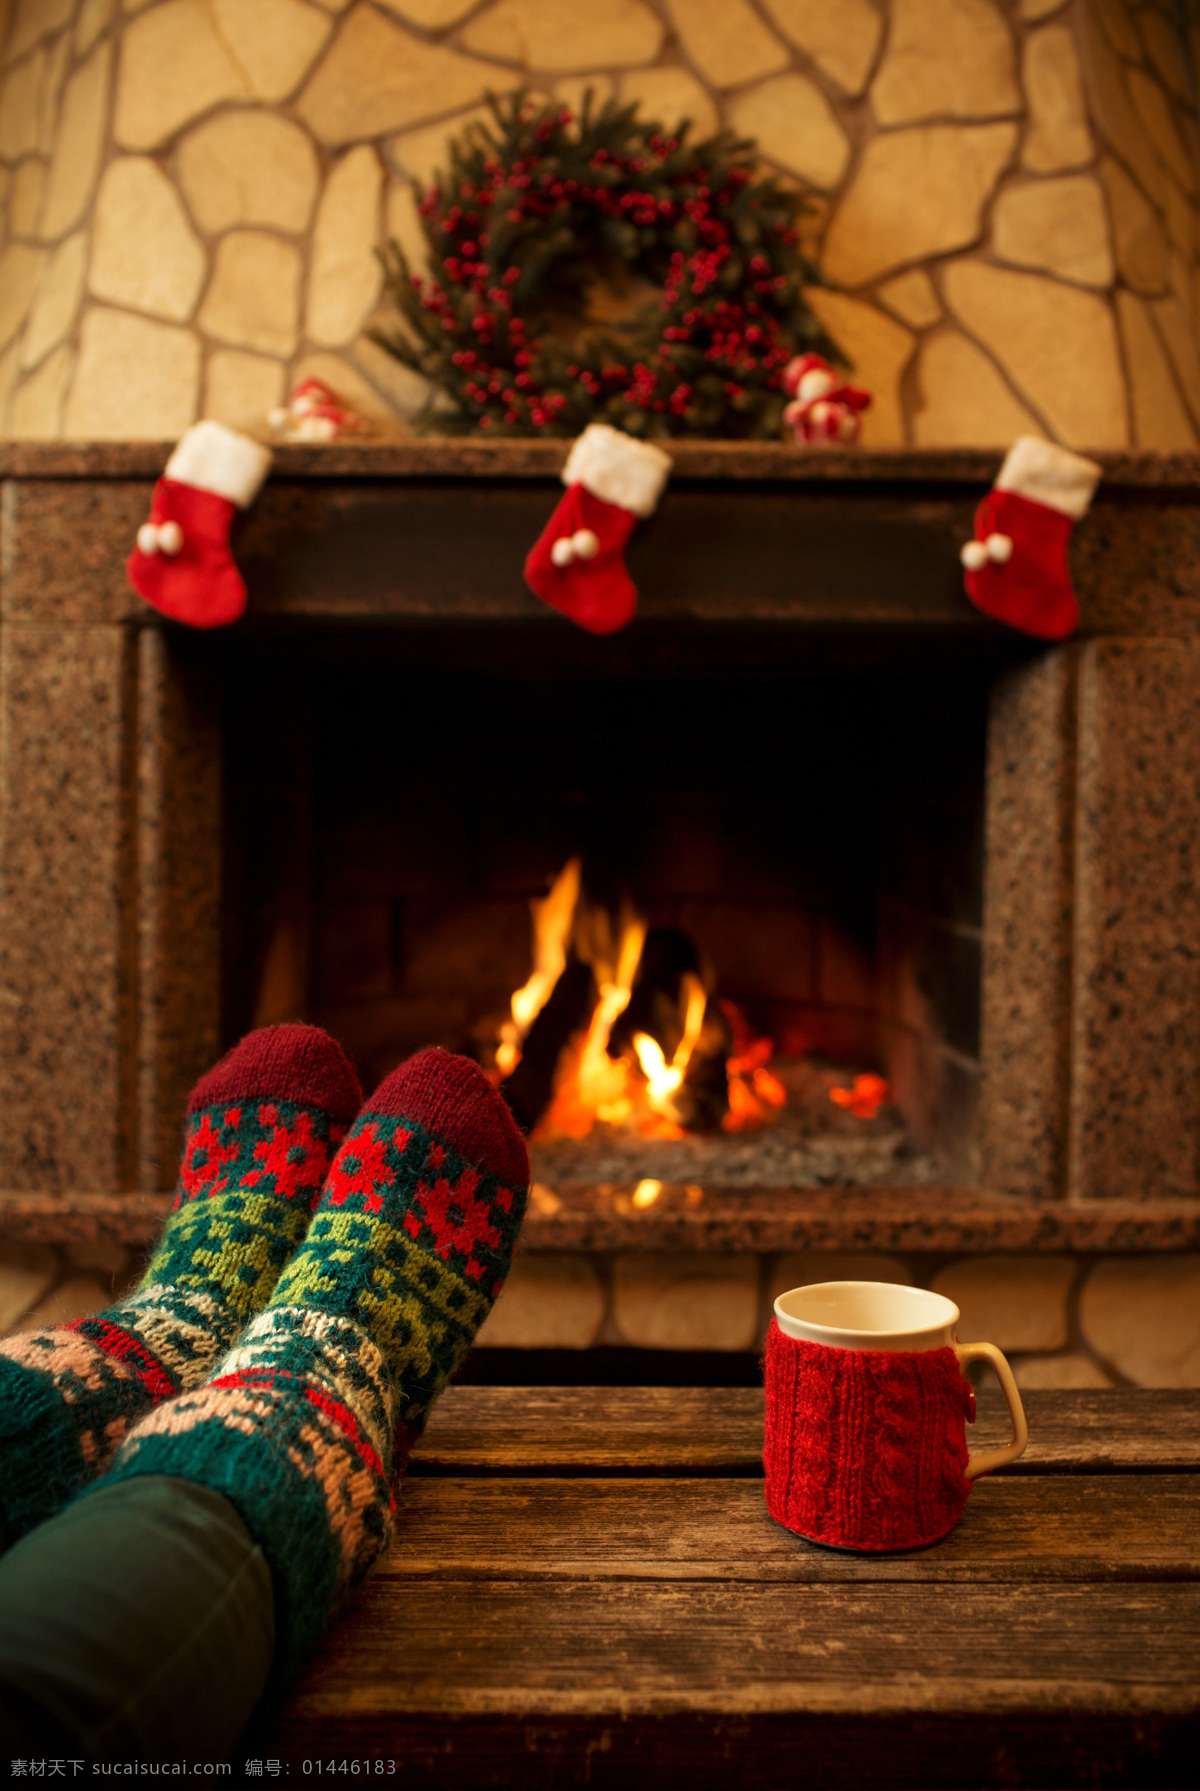 壁炉 旁 烤火 脚 圣诞花纹袜子 水杯 炉火 国外家庭 圣诞节 冬季 火焰图片 生活百科